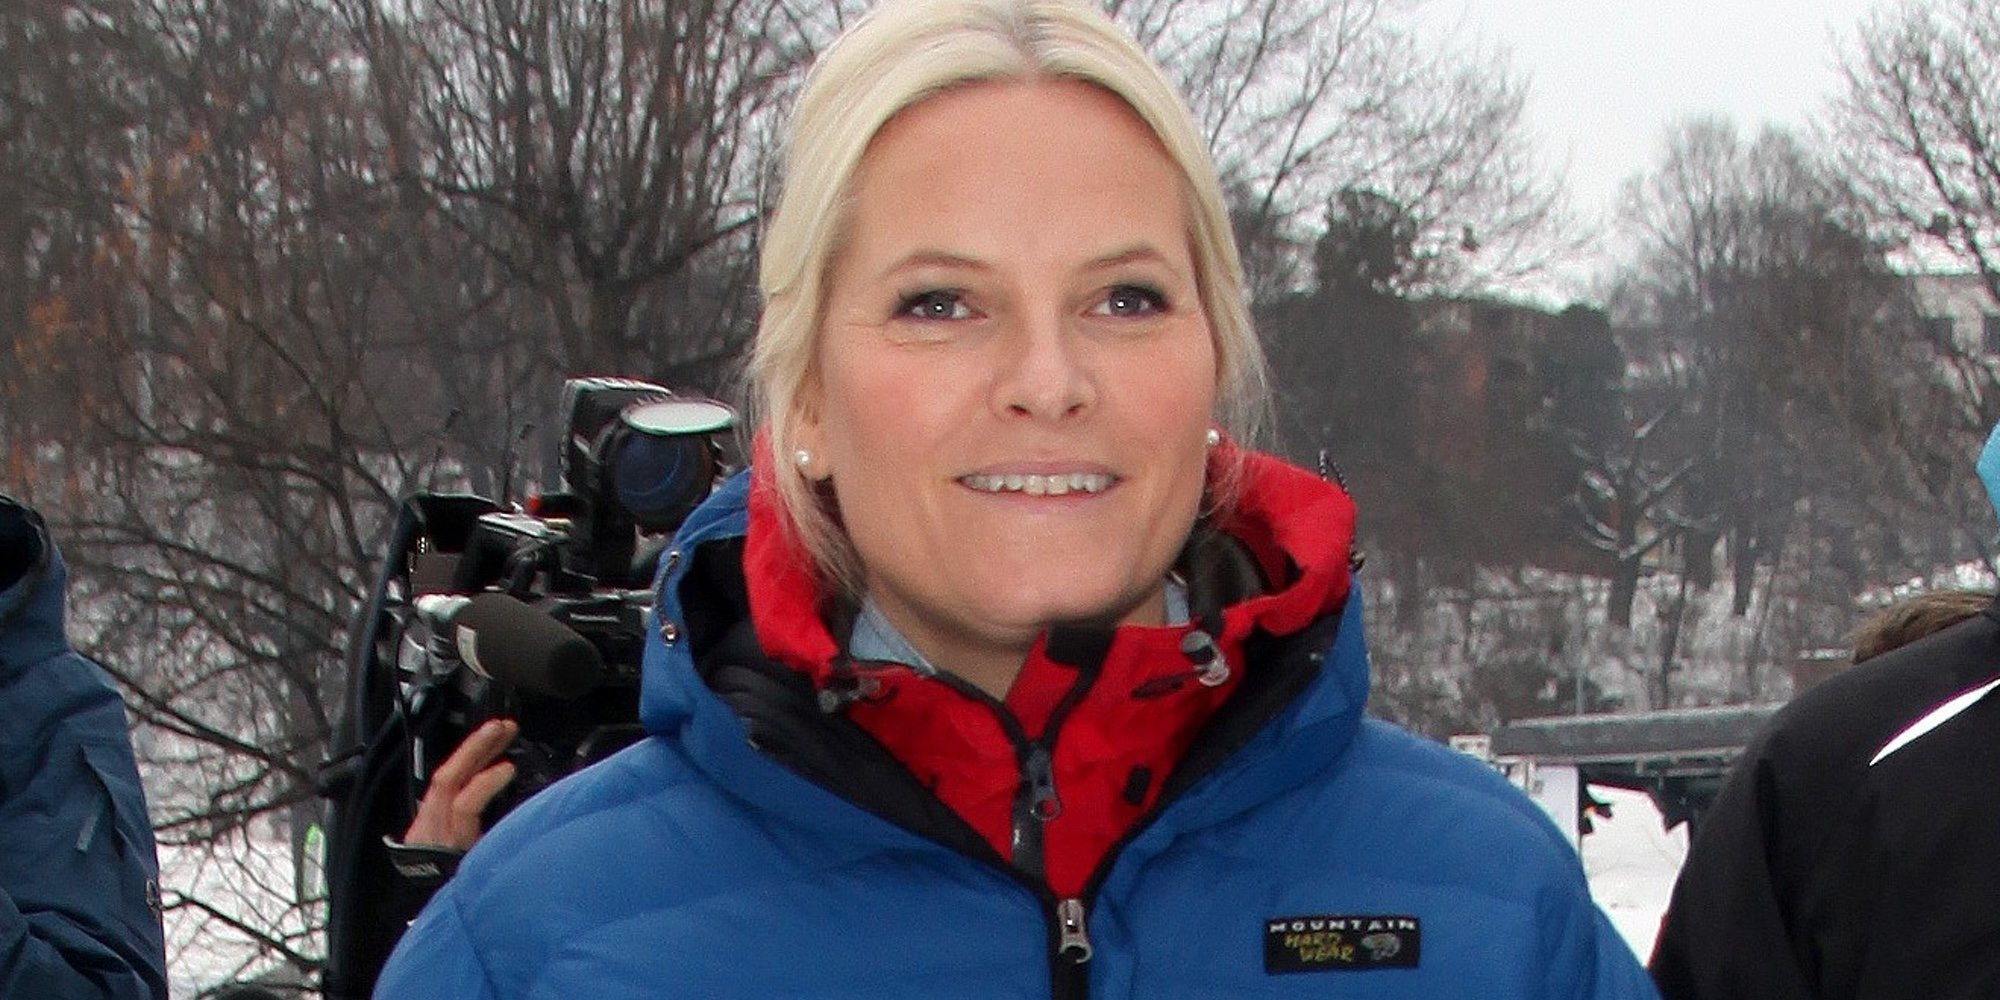 La Princesa Mette-Marit de Noruega sufre un accidente de esquí